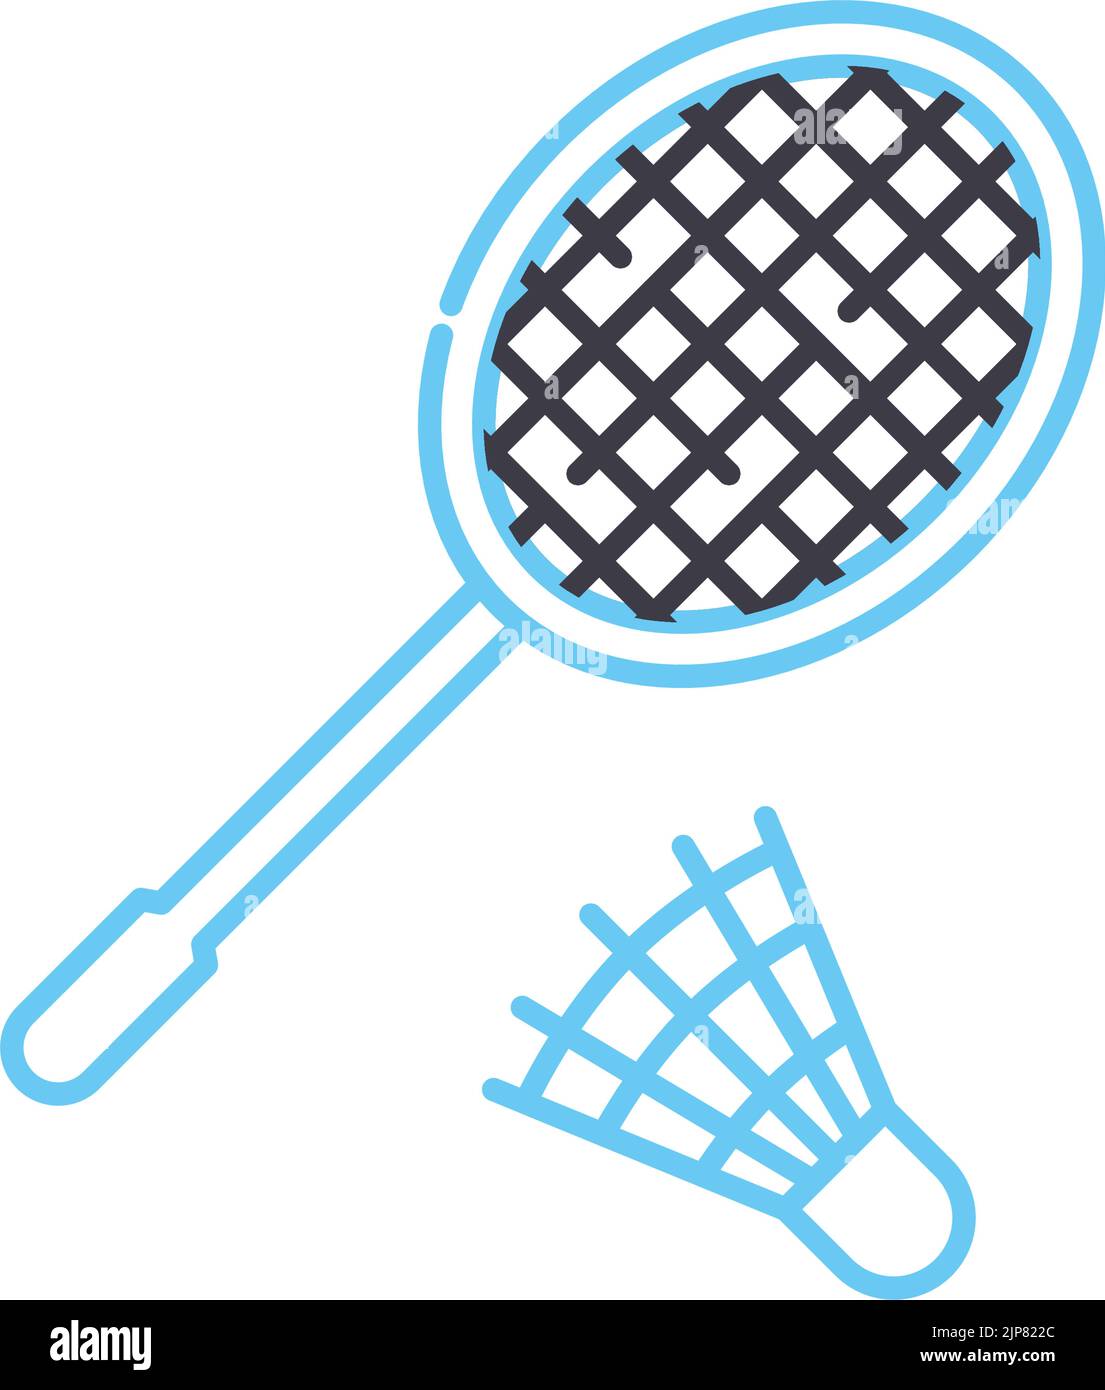 Badminton pictogram Banque d'images détourées - Alamy